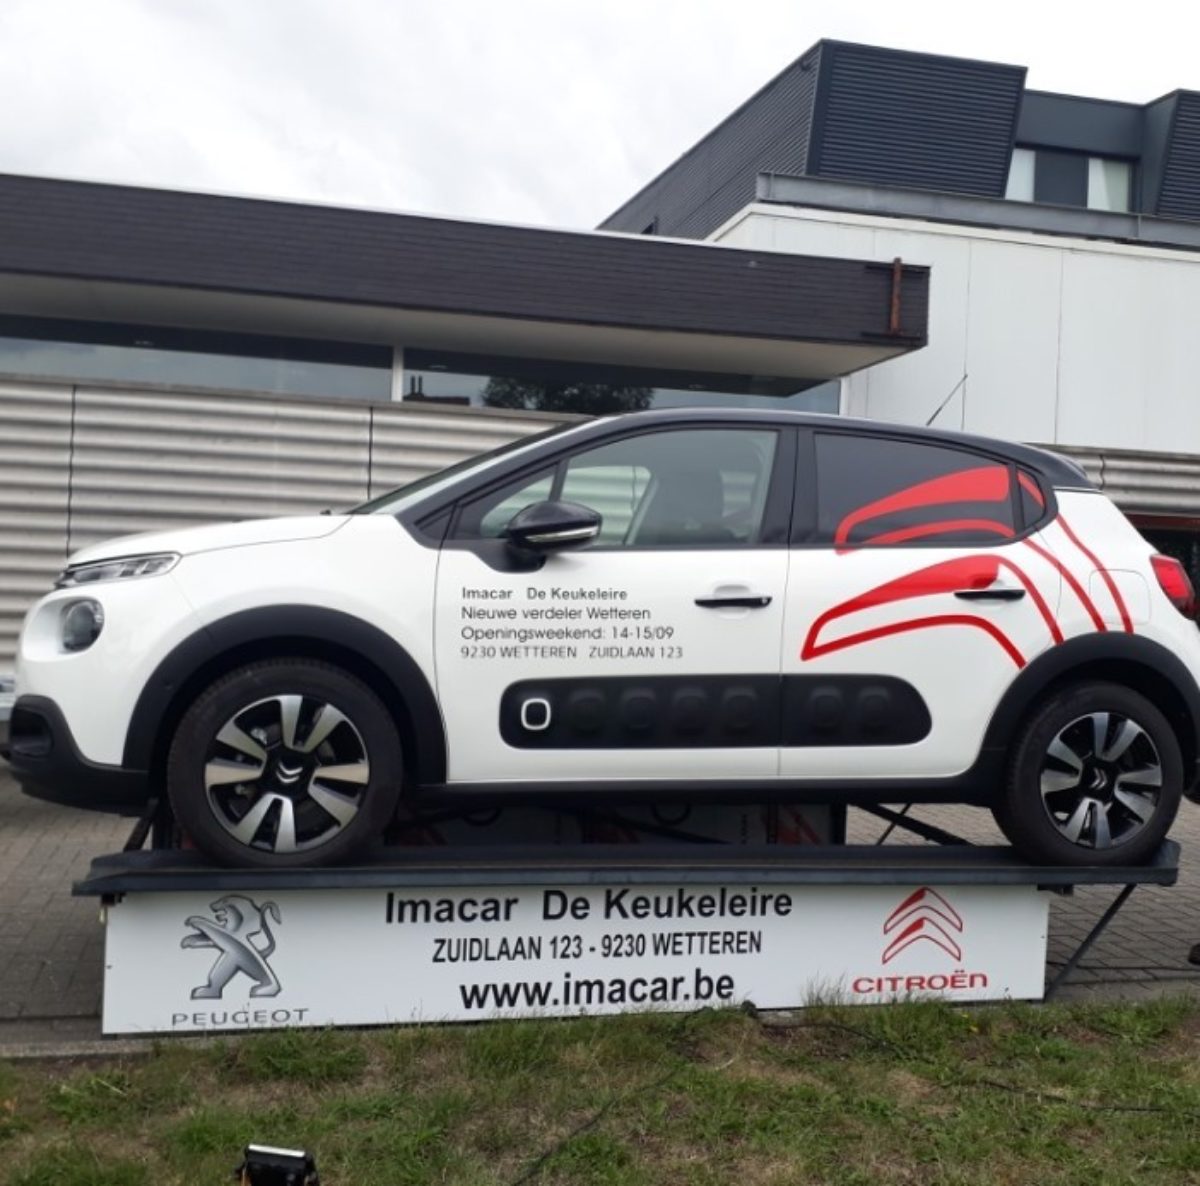 Imacar De Keukeleire Wetteren verwelkomt Citroën